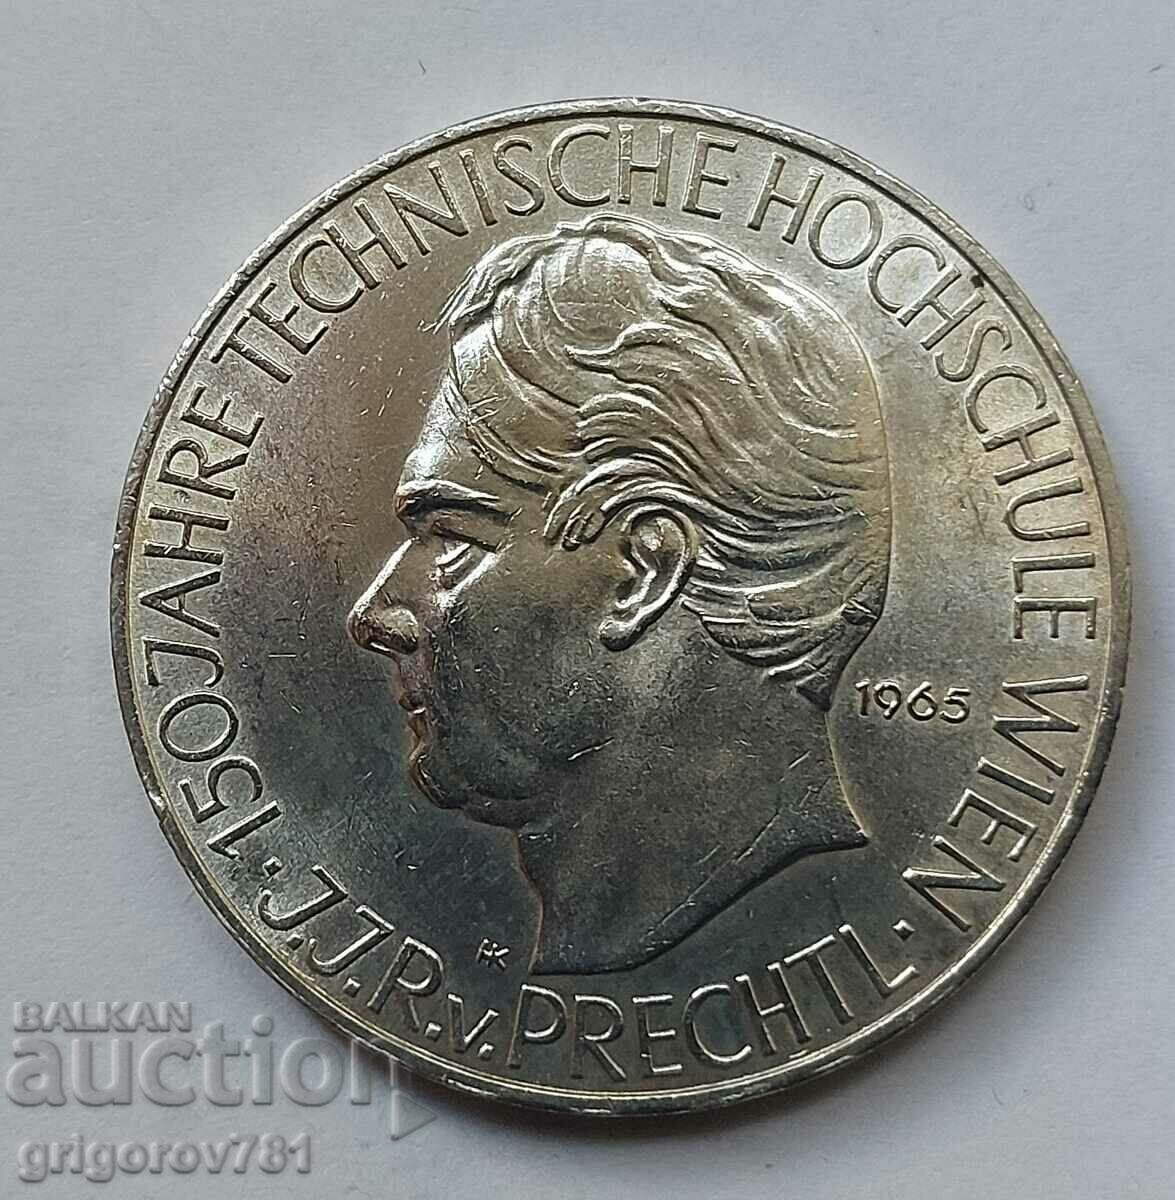 25 Shilling Silver Αυστρία 1965 - Ασημένιο νόμισμα #25